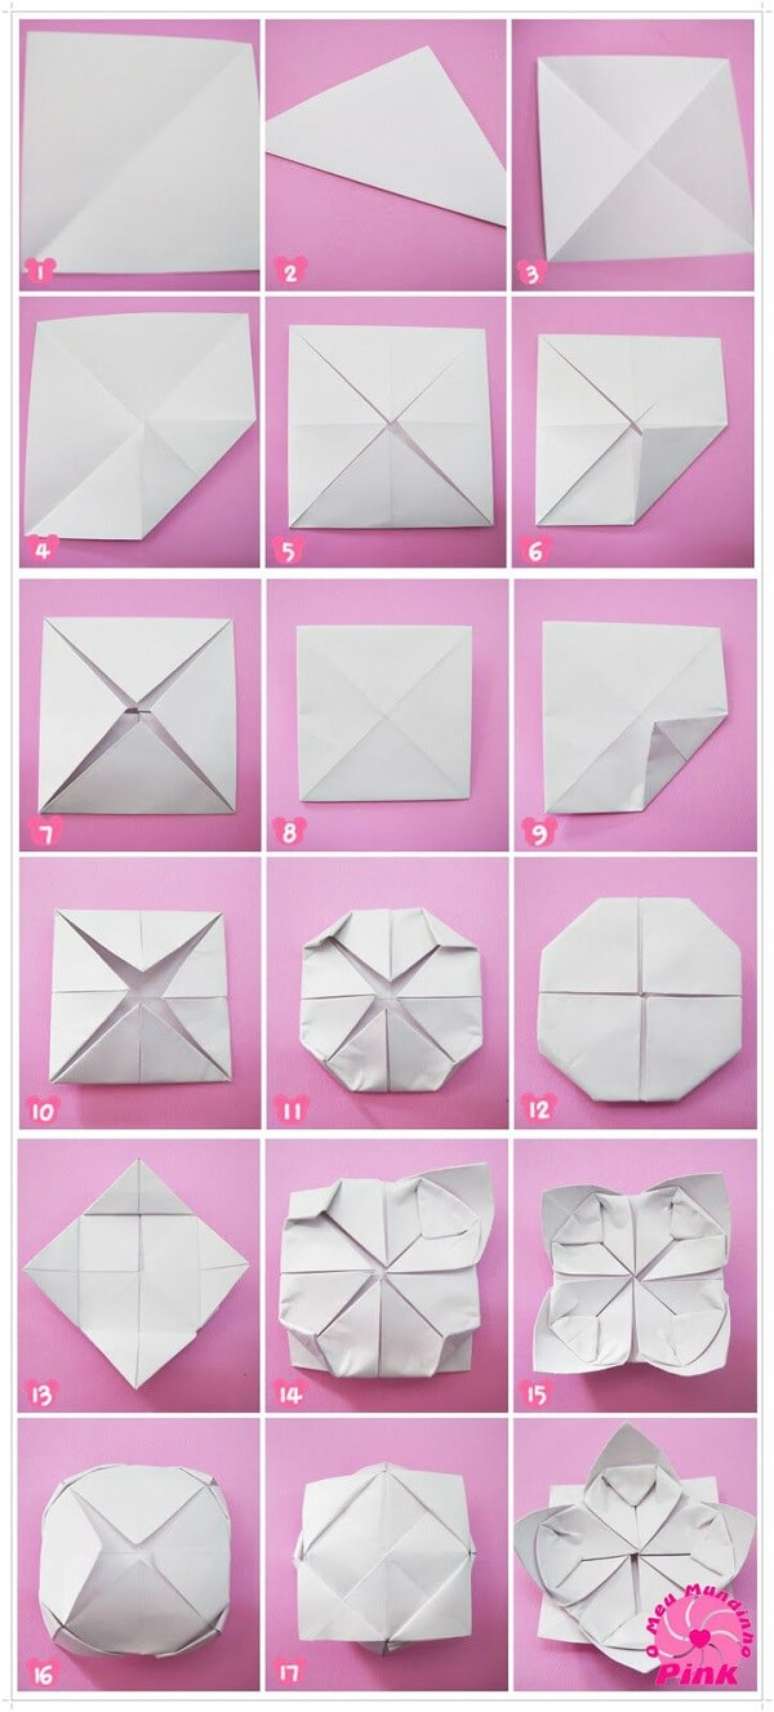 8. Passo a passo de como fazer flor fácil de origami – Foto: Via Pinterest